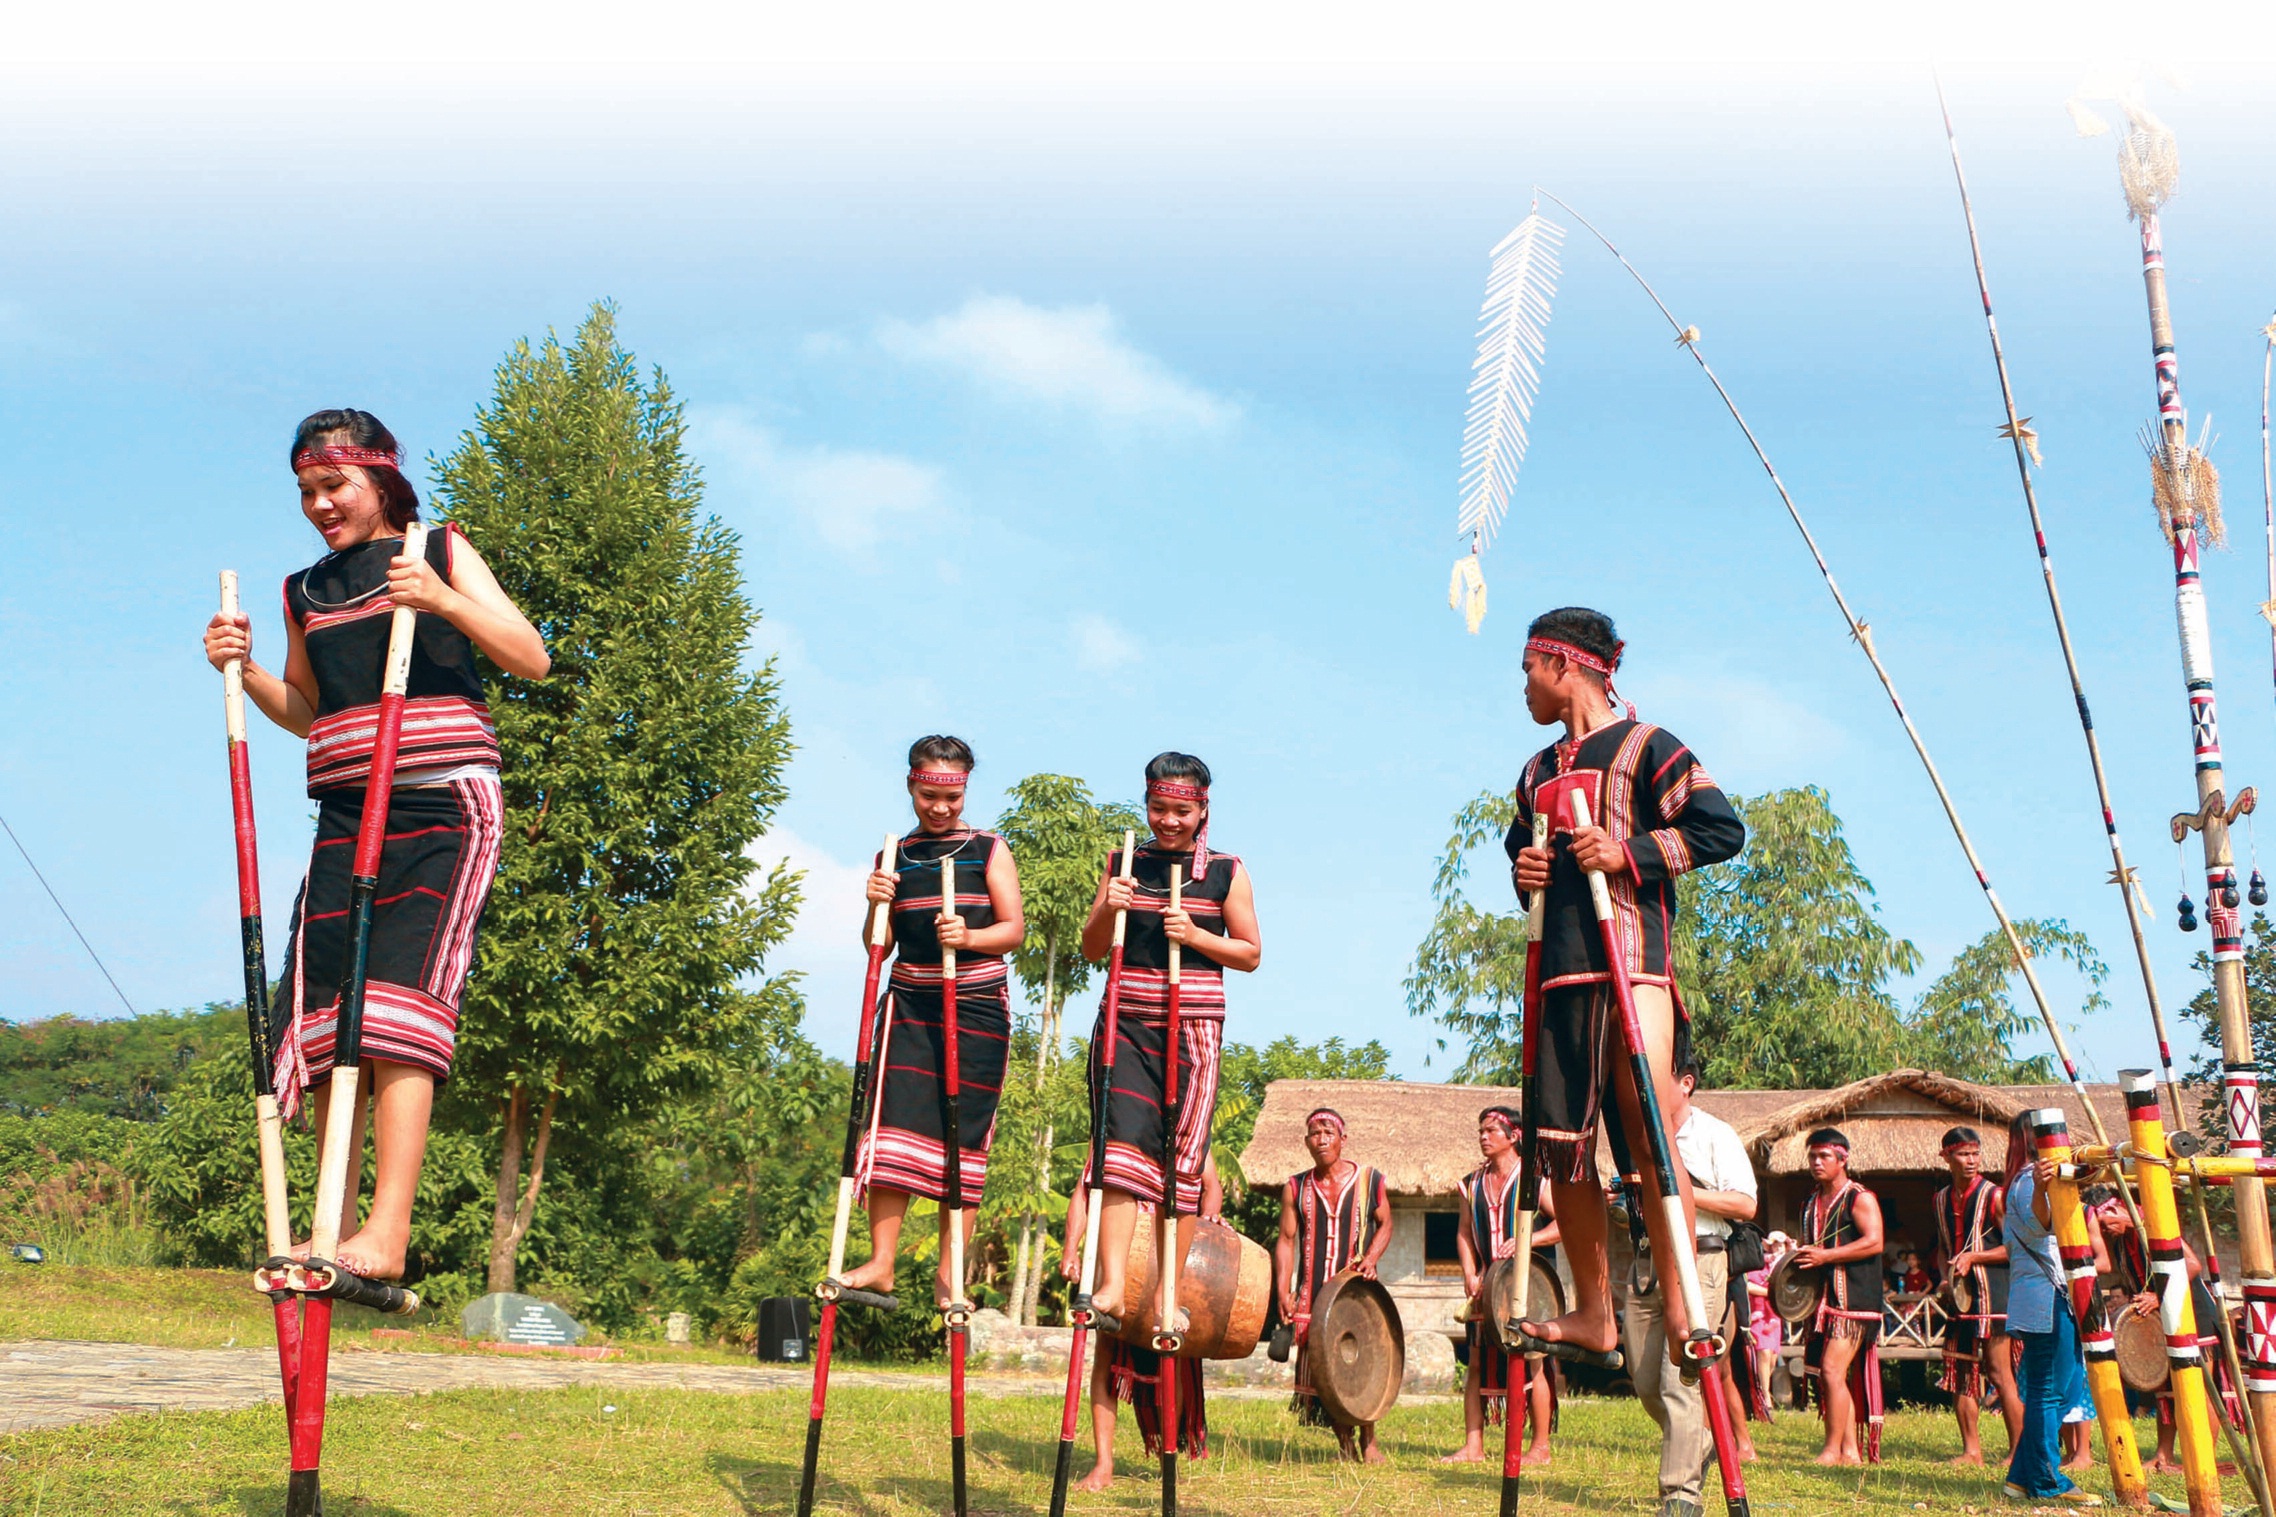 Đến với Làng Văn hóa - Du lịch các dân tộc Việt Nam, ngoài tìm hiểu về văn hóa dân tộc,
            du khách còn có thể tham gia vào các trò chơi dân gian như đi cà kheo…